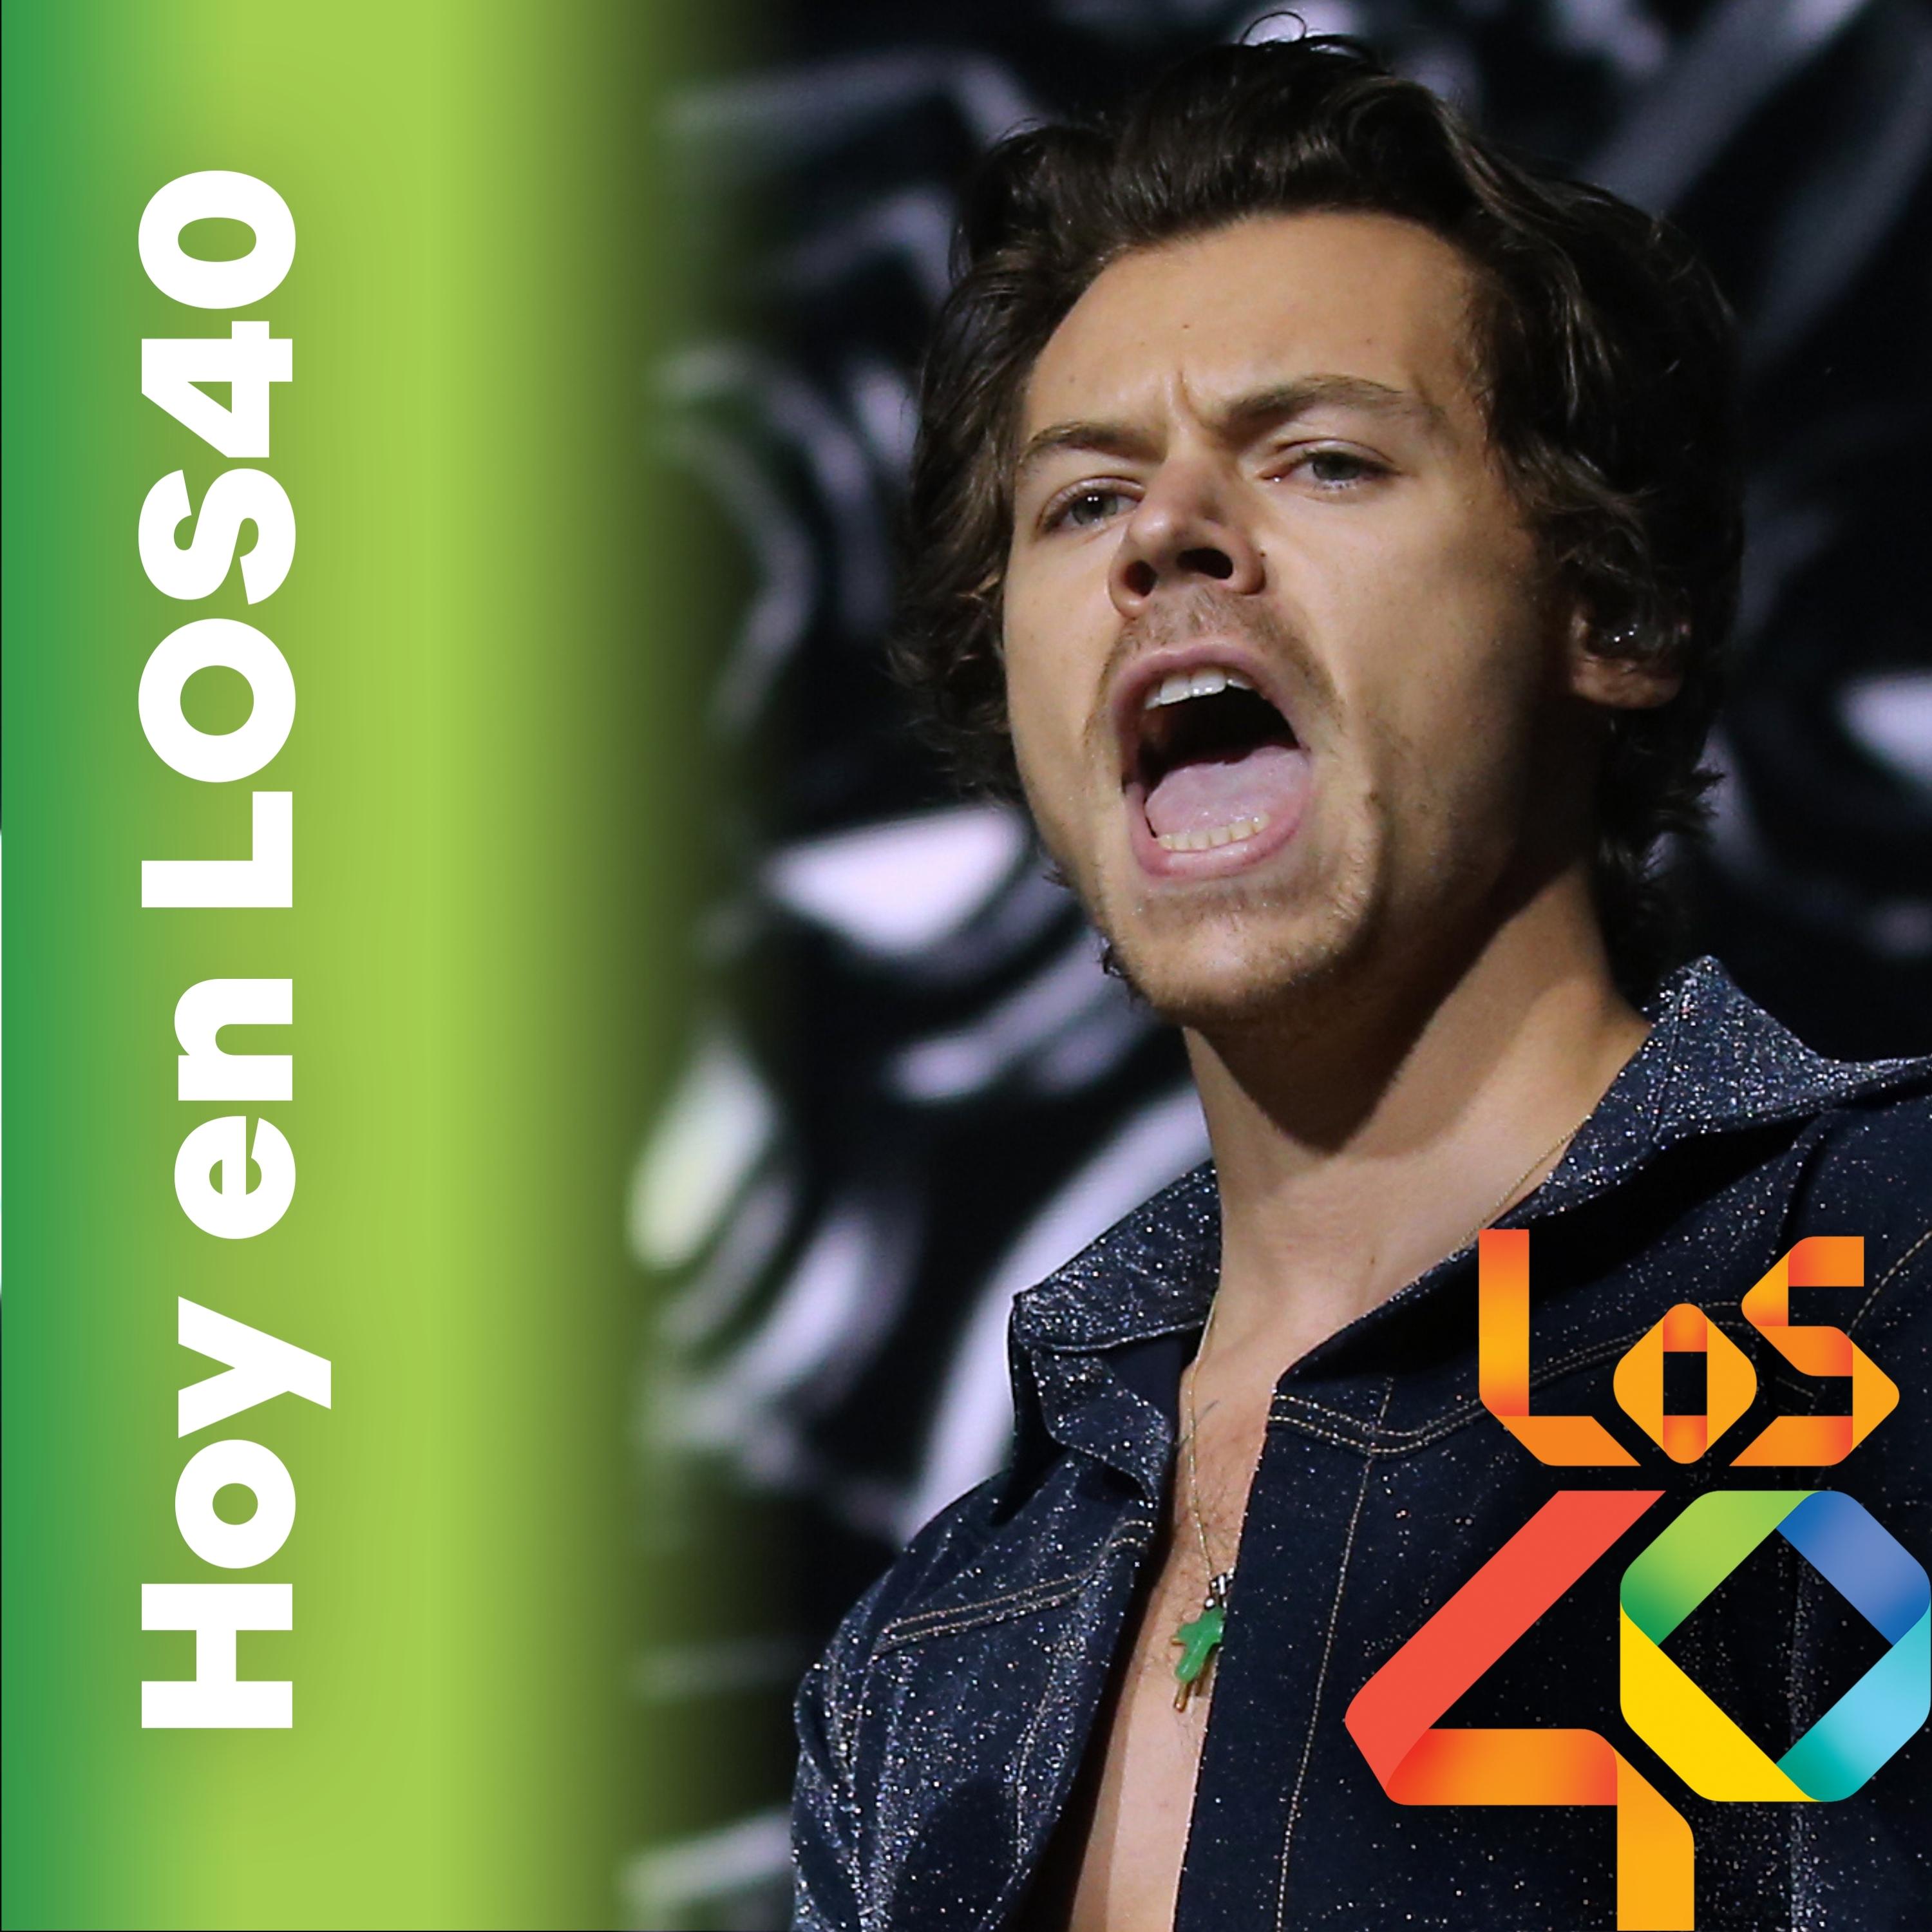 La visita a España de Harry Styles – Noticias del 20 de enero de 2021 